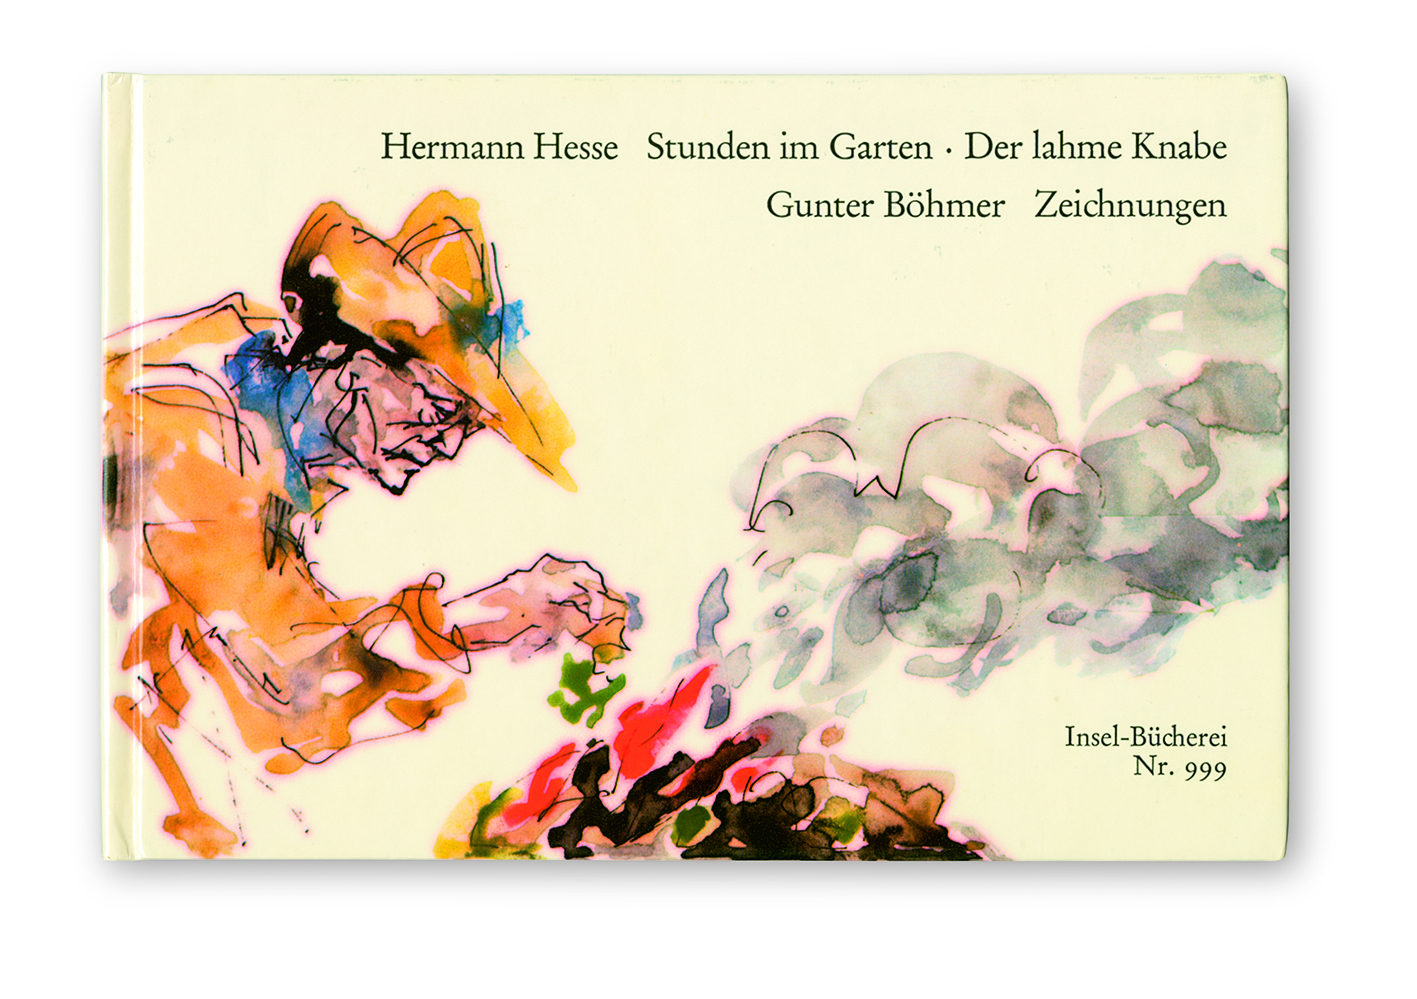 Letterarie incisioni: le illustrazioni di Gunter Böhmer in mostra a Parma